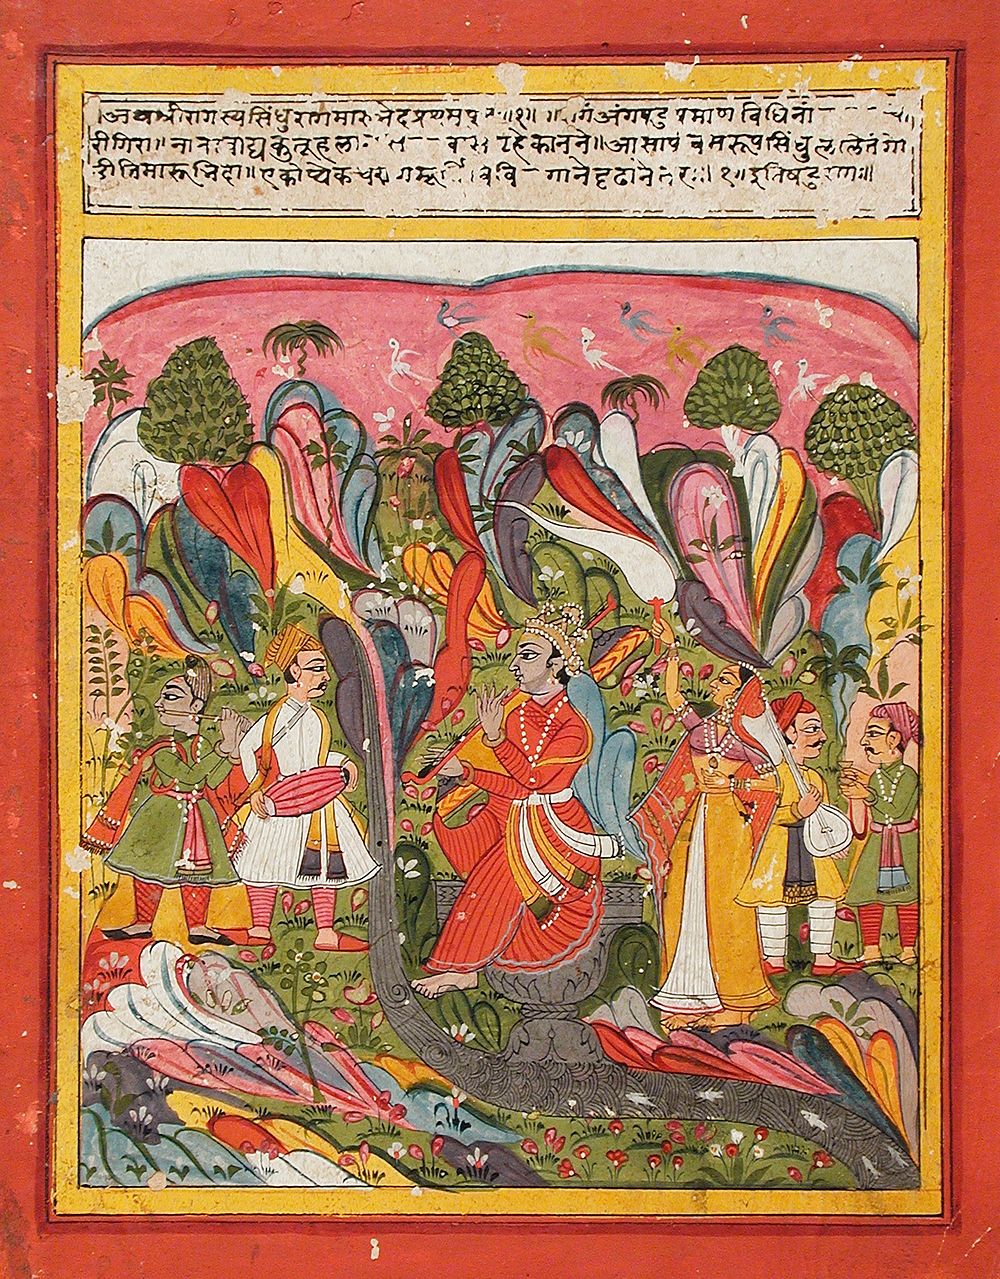 Sindhu Ragaputra, Son of Shri Raga, Folio from a Ragamala (Garland of Melodies)